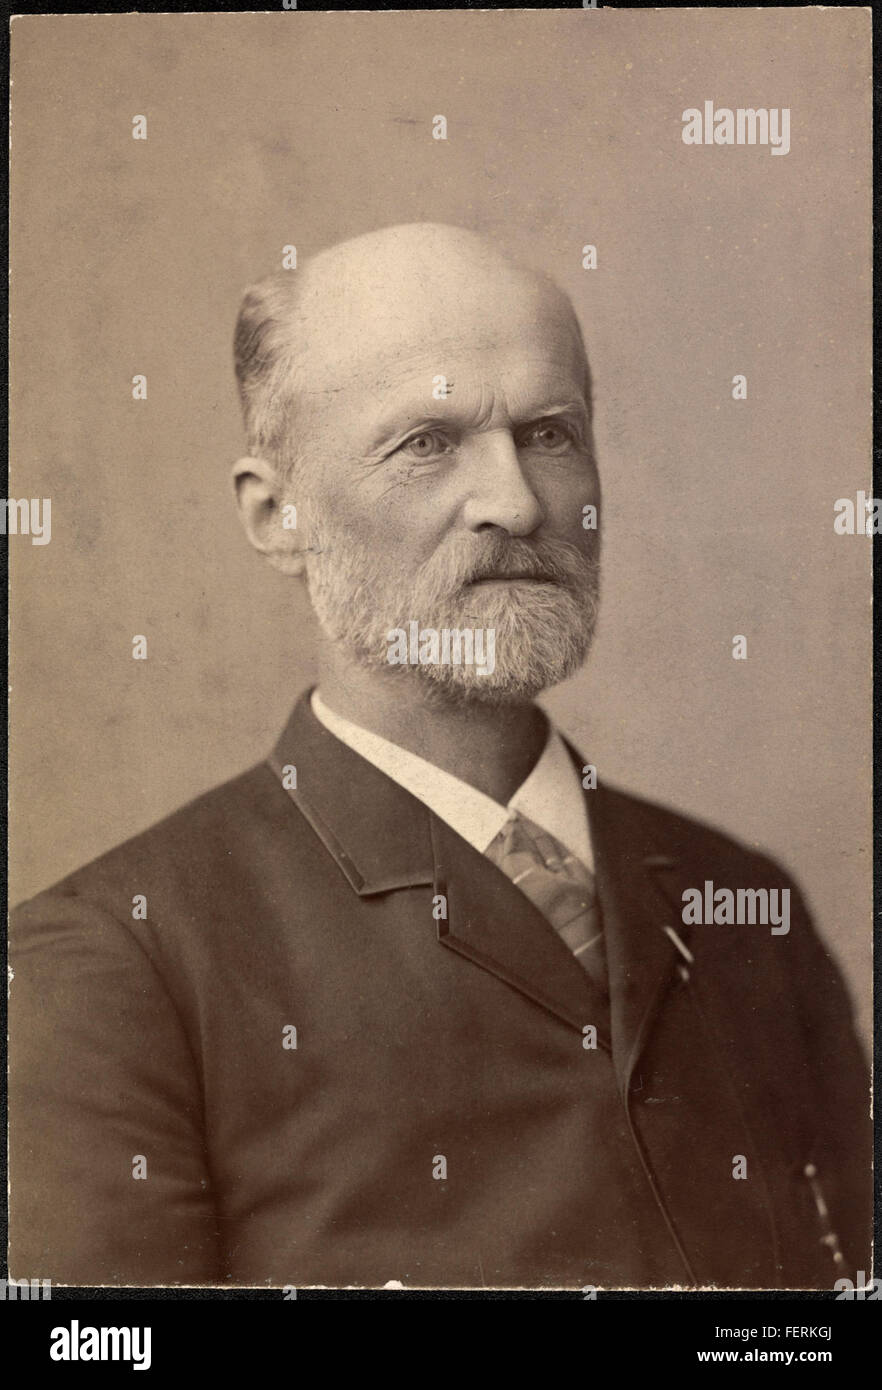 Portrett av uidentifisert mann, 1891 / Portrait of unidentified man, 1891 Portrett av uidentifisert mann, 1891  Portrait of unidentified man, Stock Photo